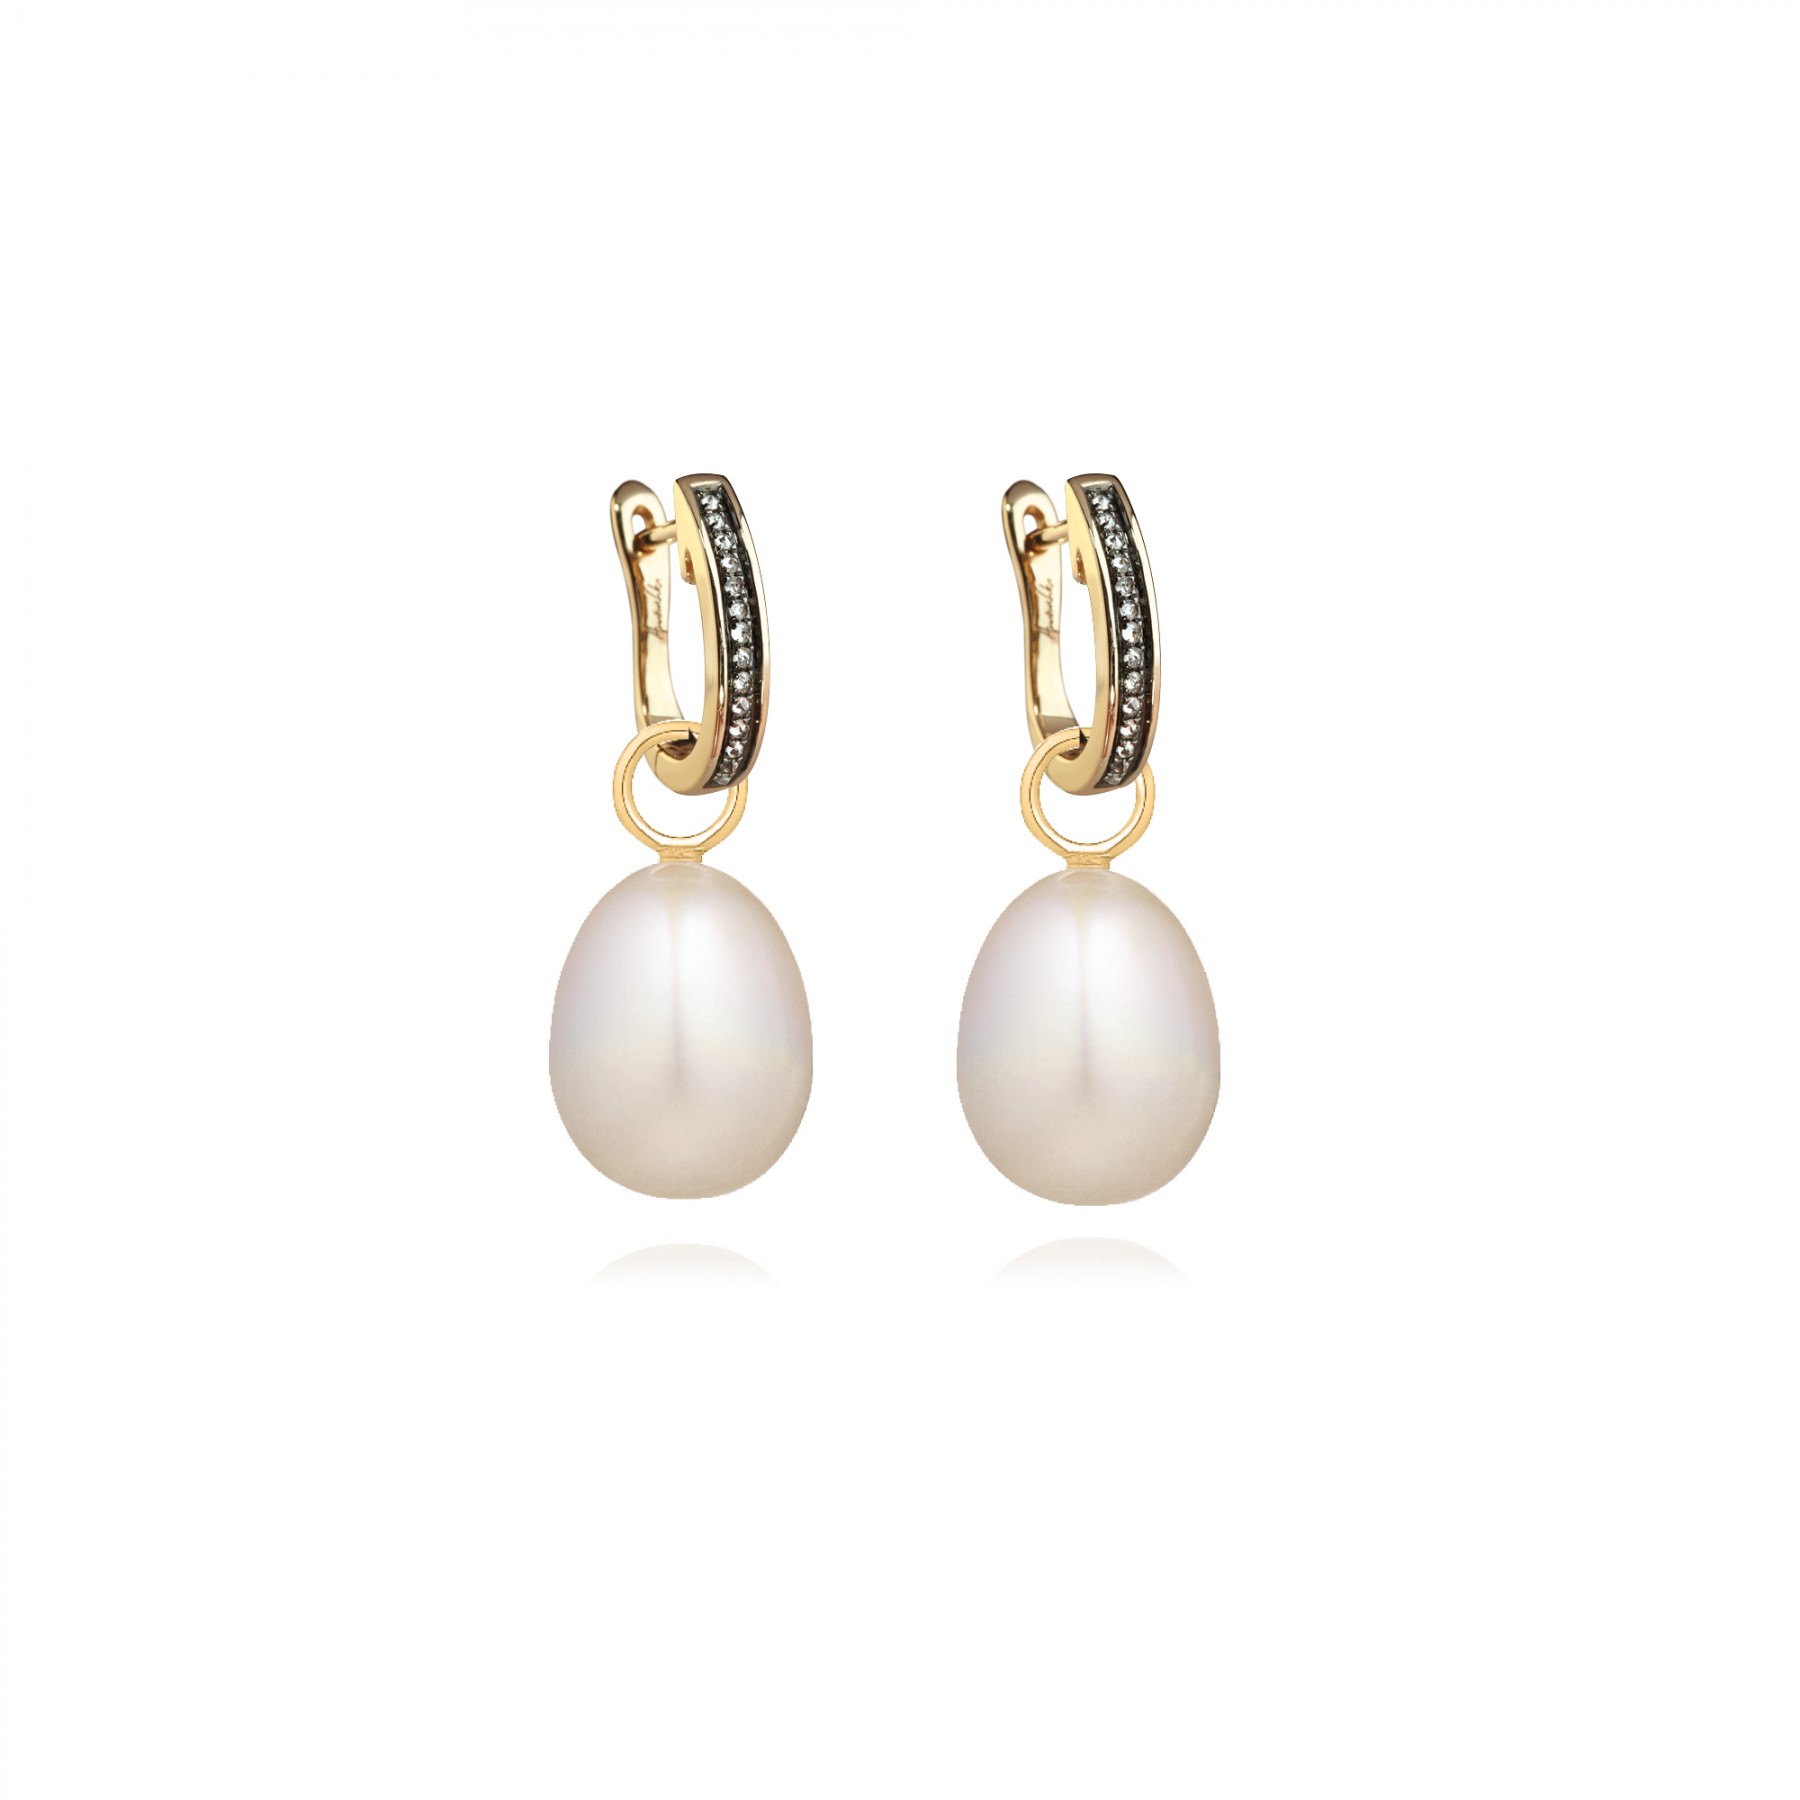 Pearl earrings - Let Everyone notice you - StyleSkier.com